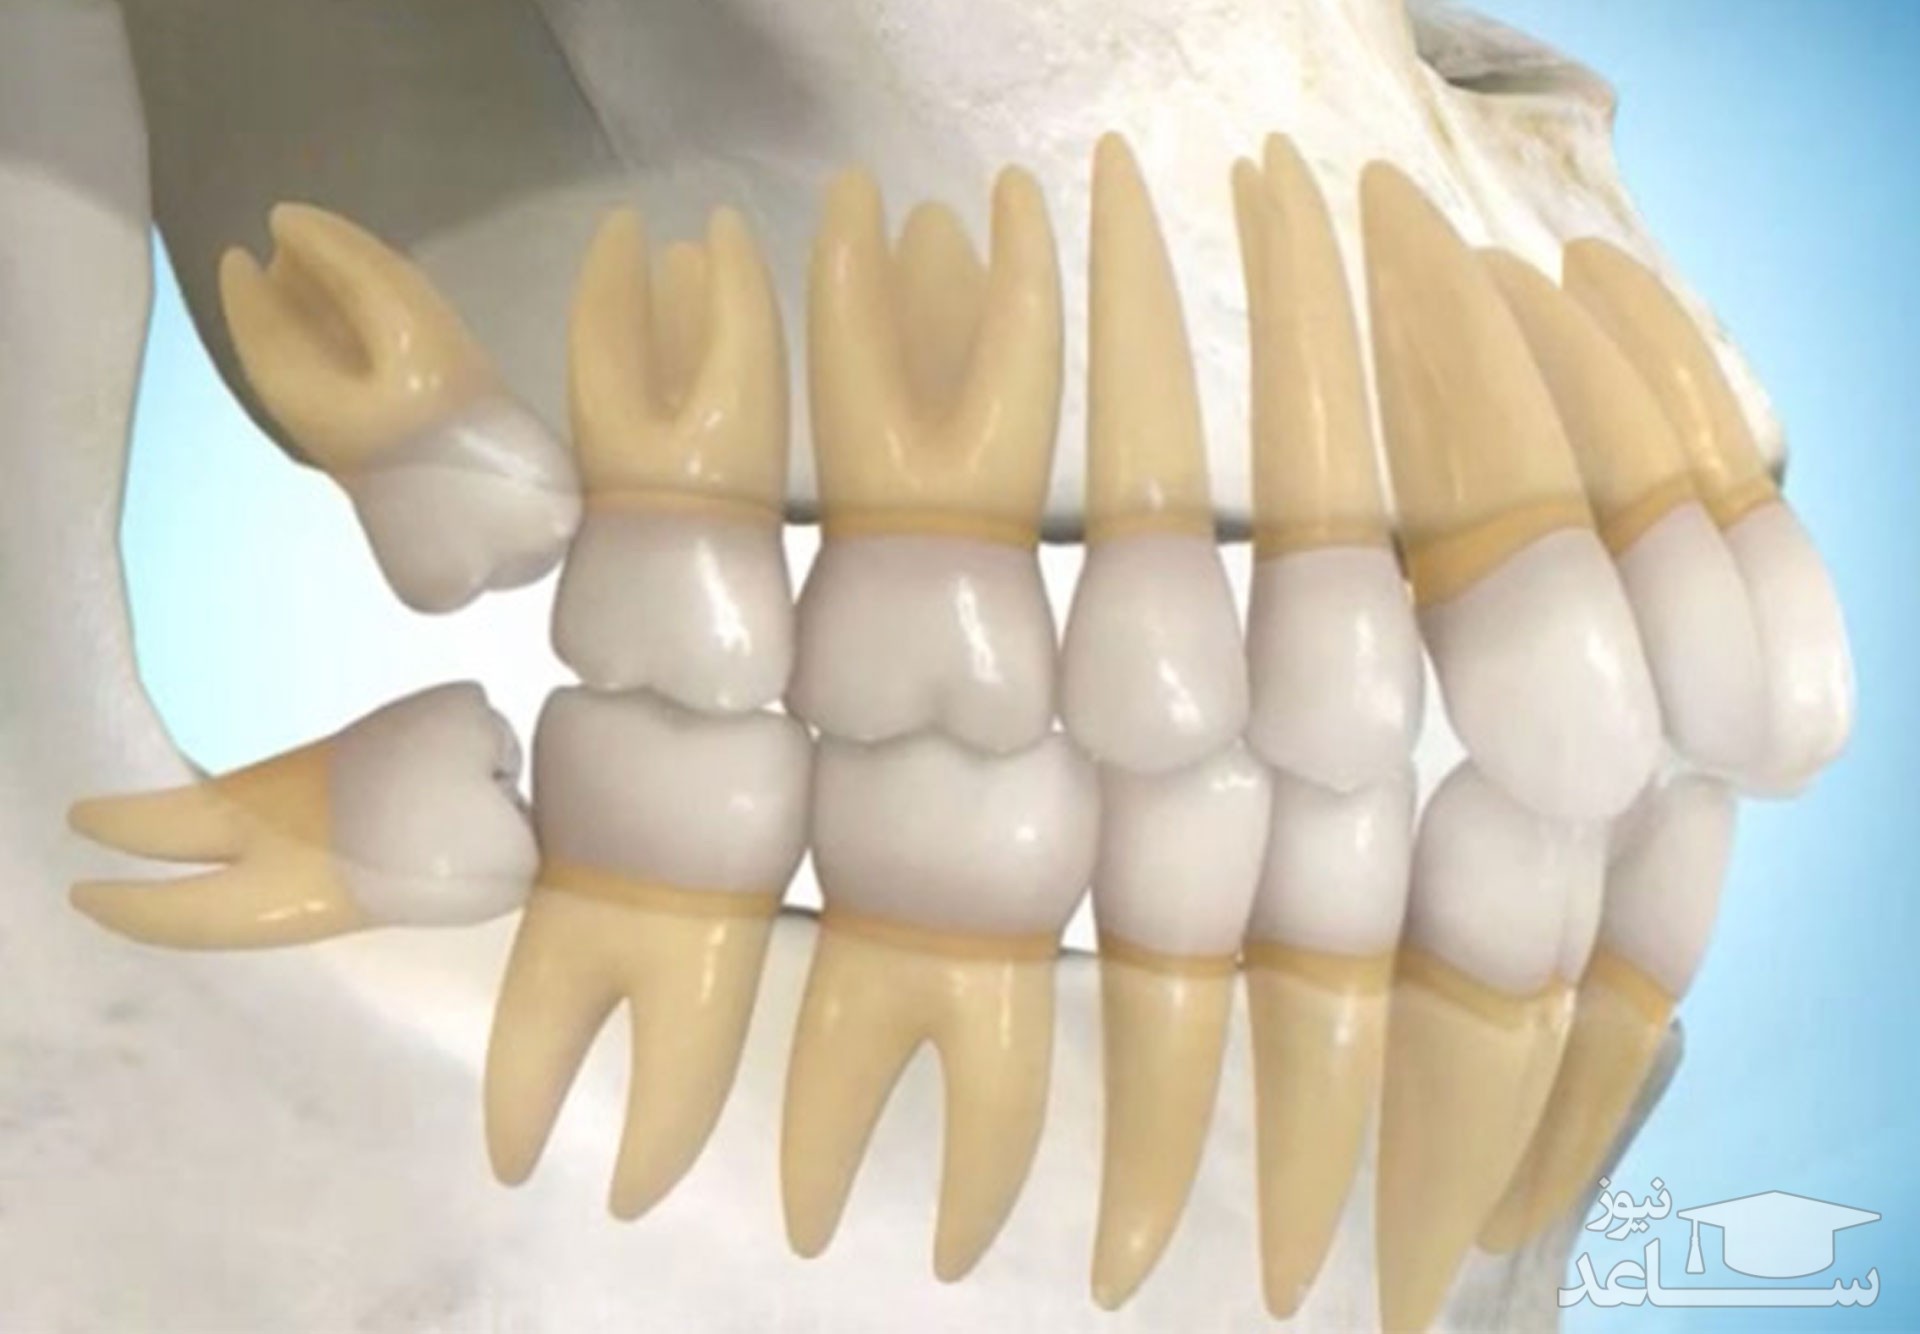 фото задних зубов